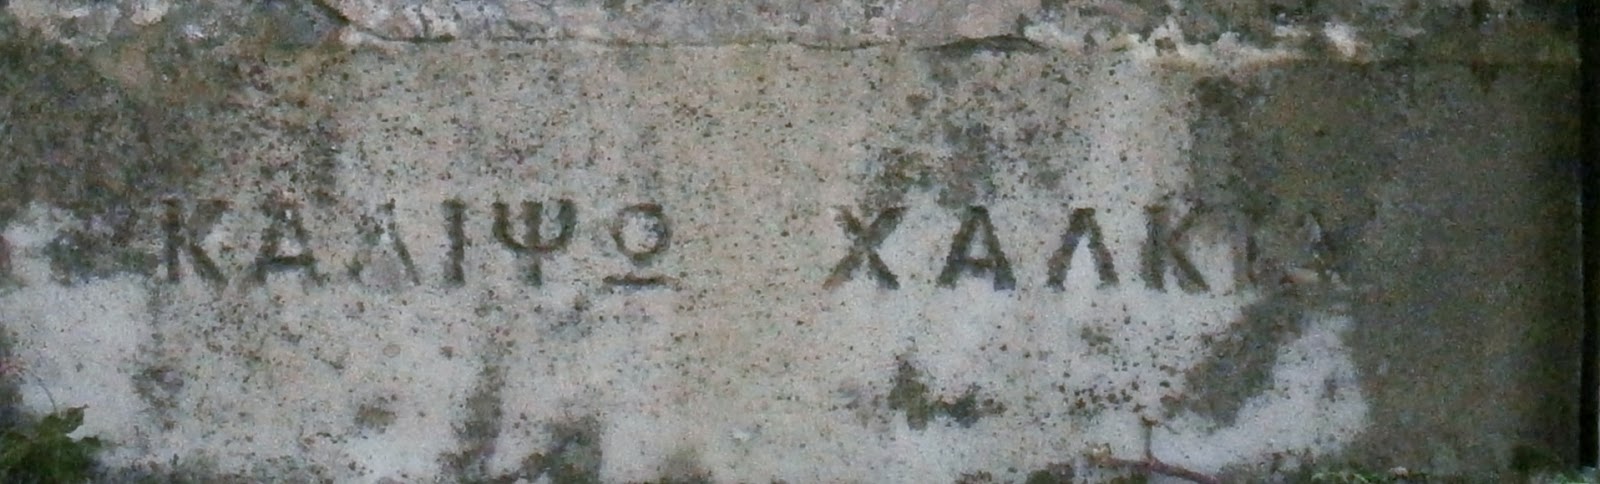 το μνημείο της Καλιψούς Χαλκιά στο Α΄ Δημοτικό Νεκροταφείο Ιωαννίνων